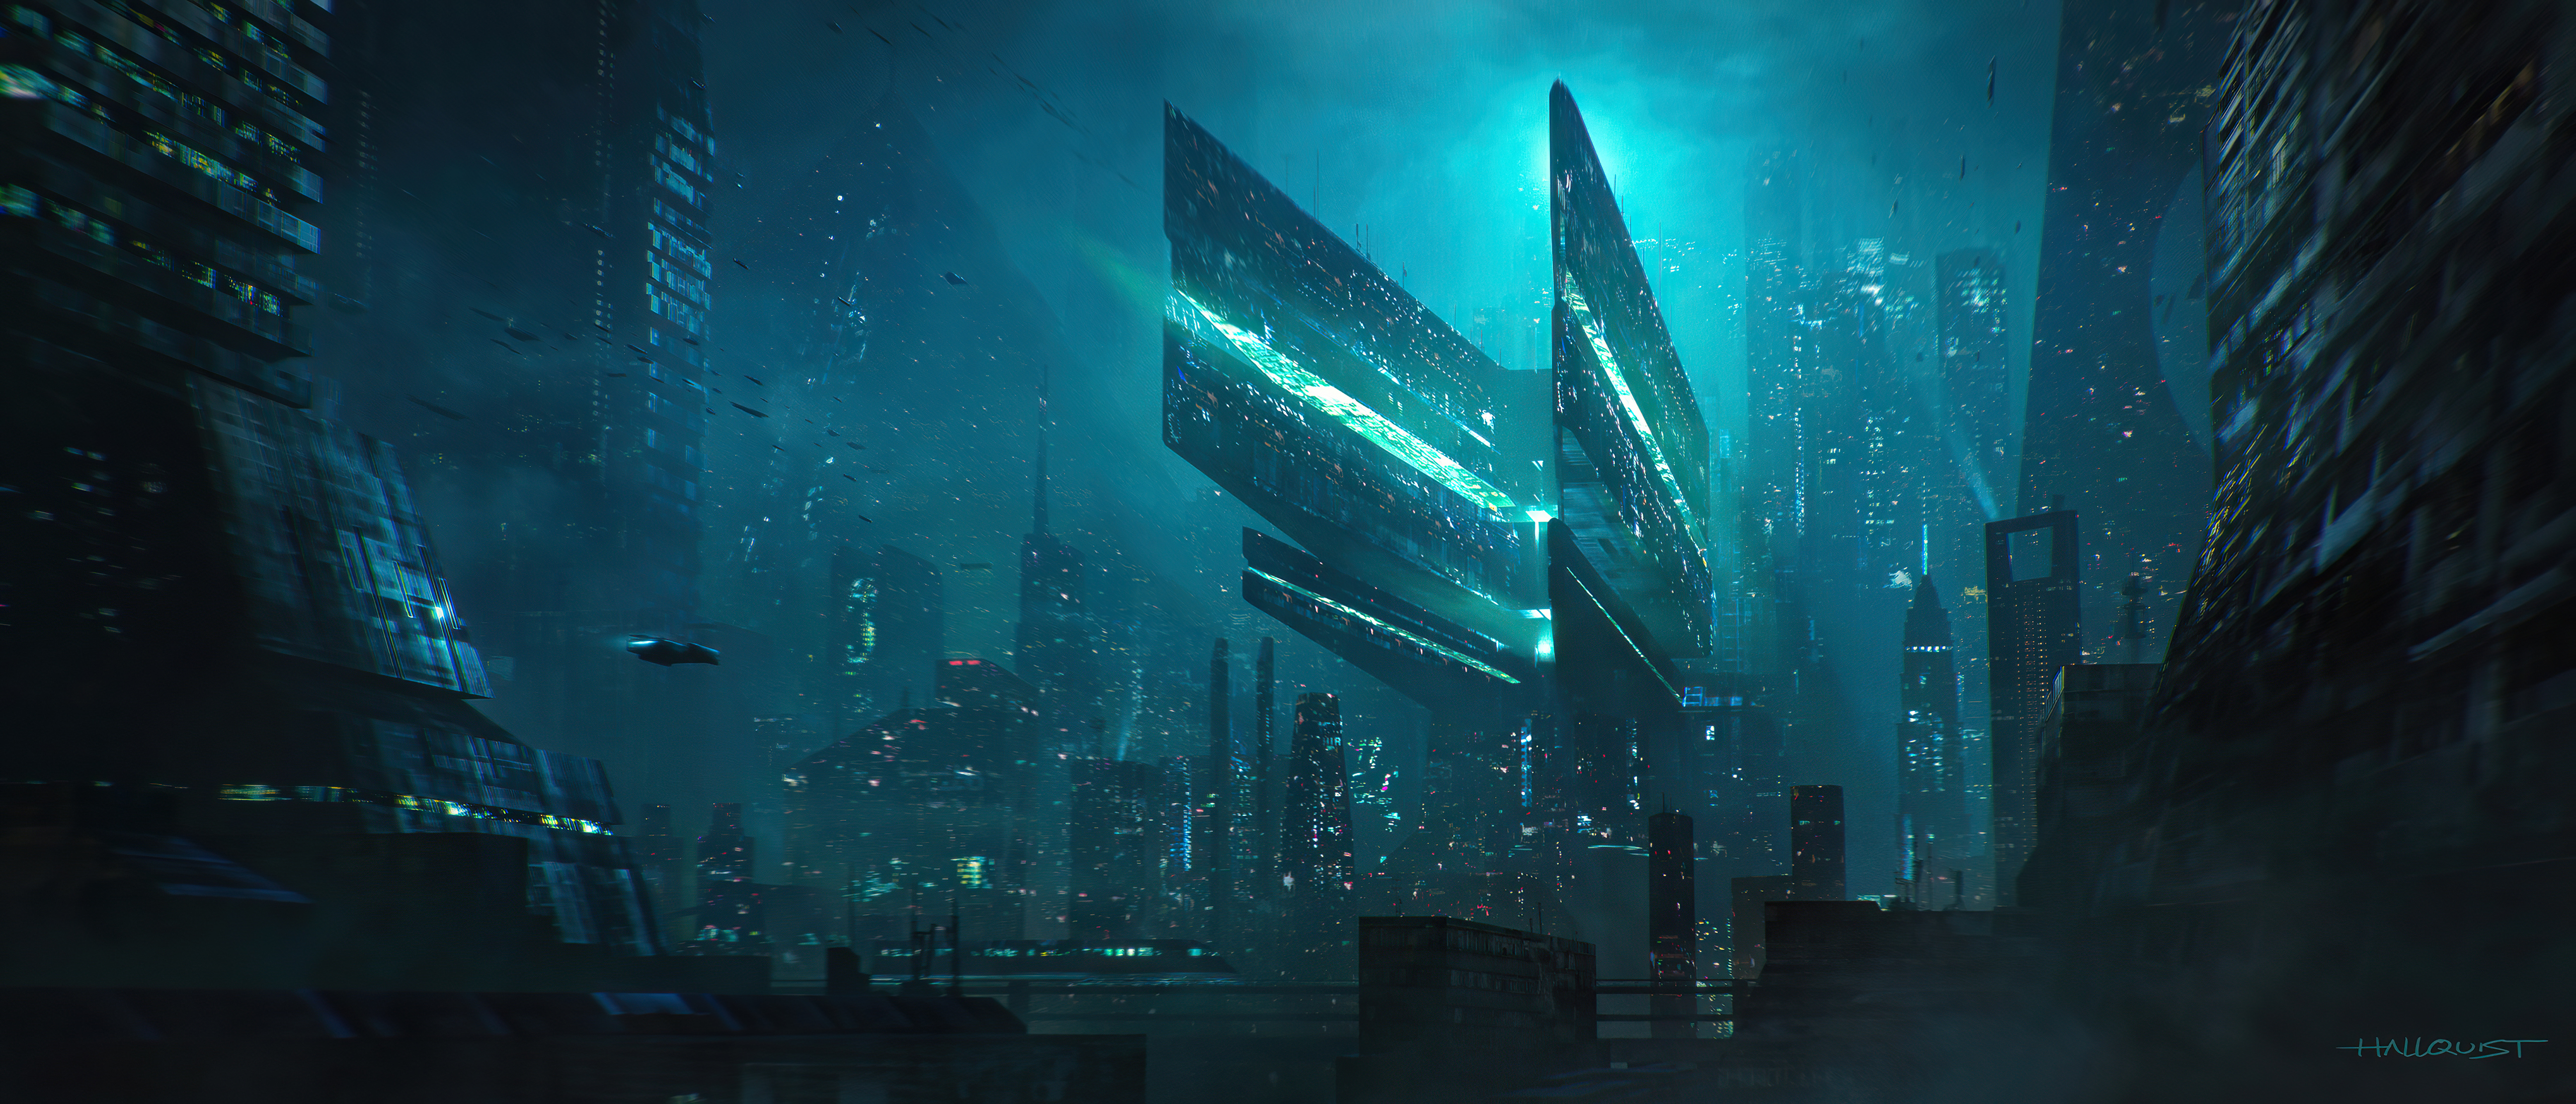 Sci-fi City: Bạn từng mơ ước đến với một thành phố tương lai đầy màu sắc và kỳ ảo? Với hình ảnh sci-fi city này, bạn sẽ được trải nghiệm cảm giác như đang sống trong một thế giới sci-fi đầy hứa hẹn. Cùng đắm chìm trong khung cảnh đầy kỳ ảo này.